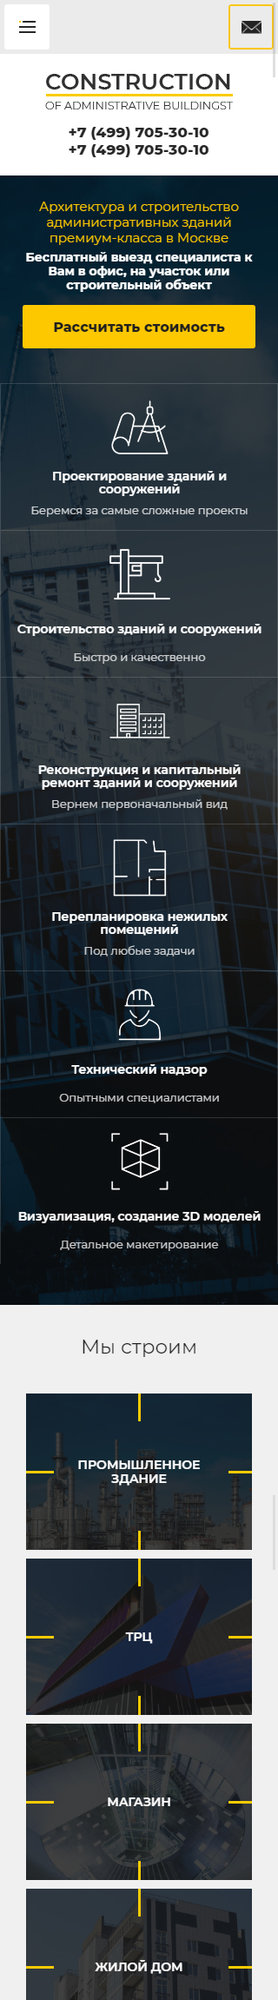 Готовый Сайт-Бизнес № 2305637 - Строительство административных зданий (Мобильная версия)